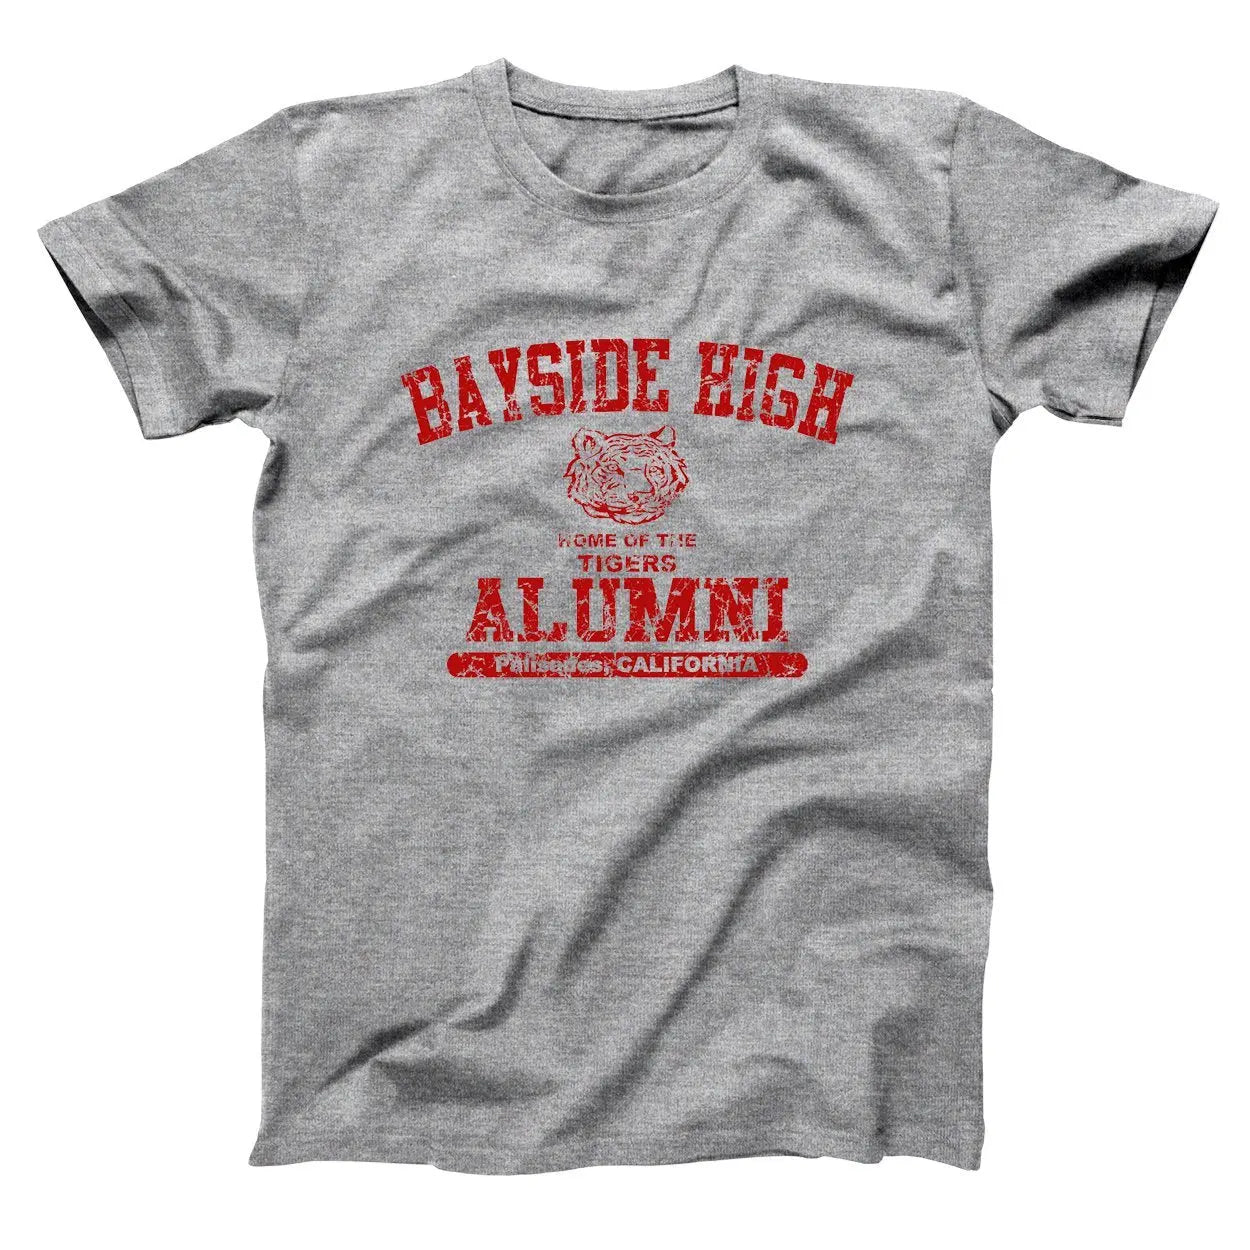 Bayside High Alumni Tshirt - Donkey Tees